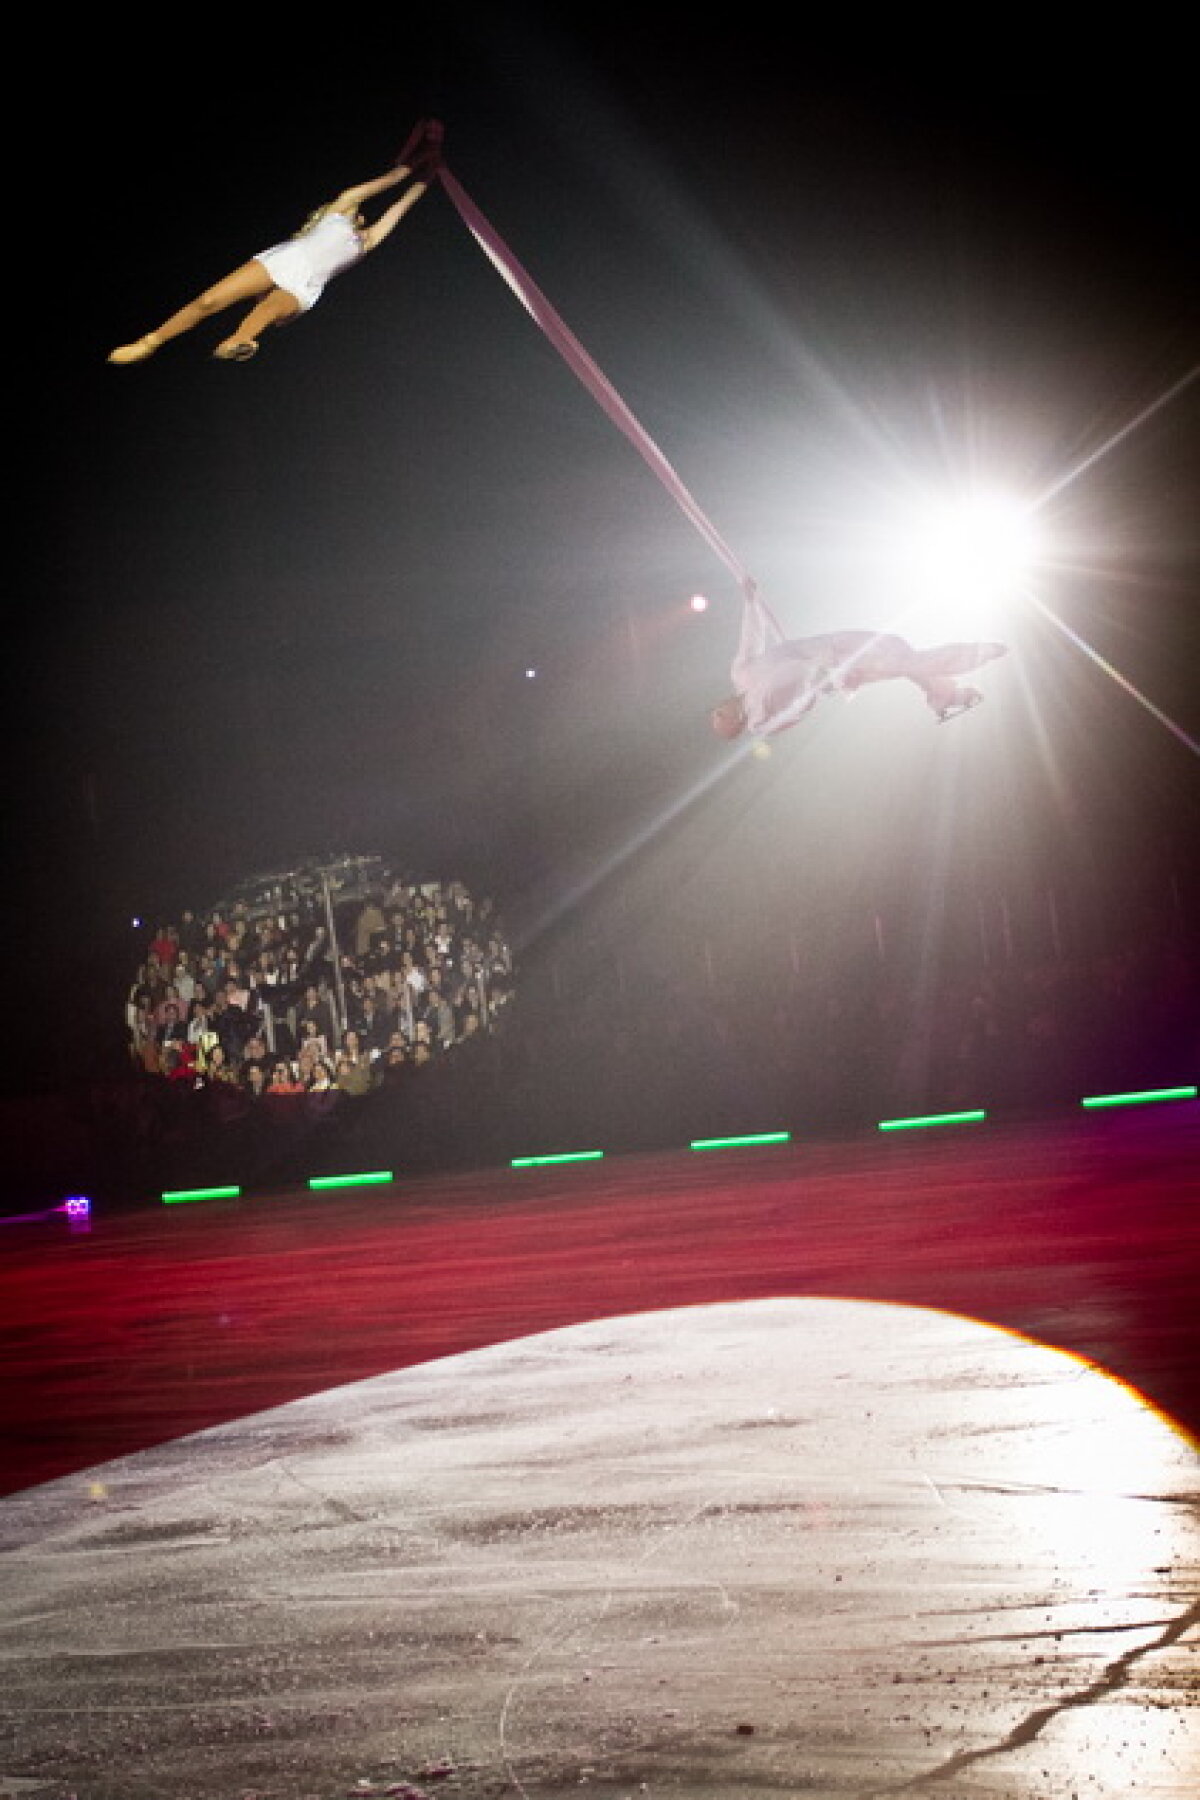 FOTO / Evgeni Plushenko show la Kings On Ice 2012! Emoţie, muzică, spectacol şi patinaj la absolut :)